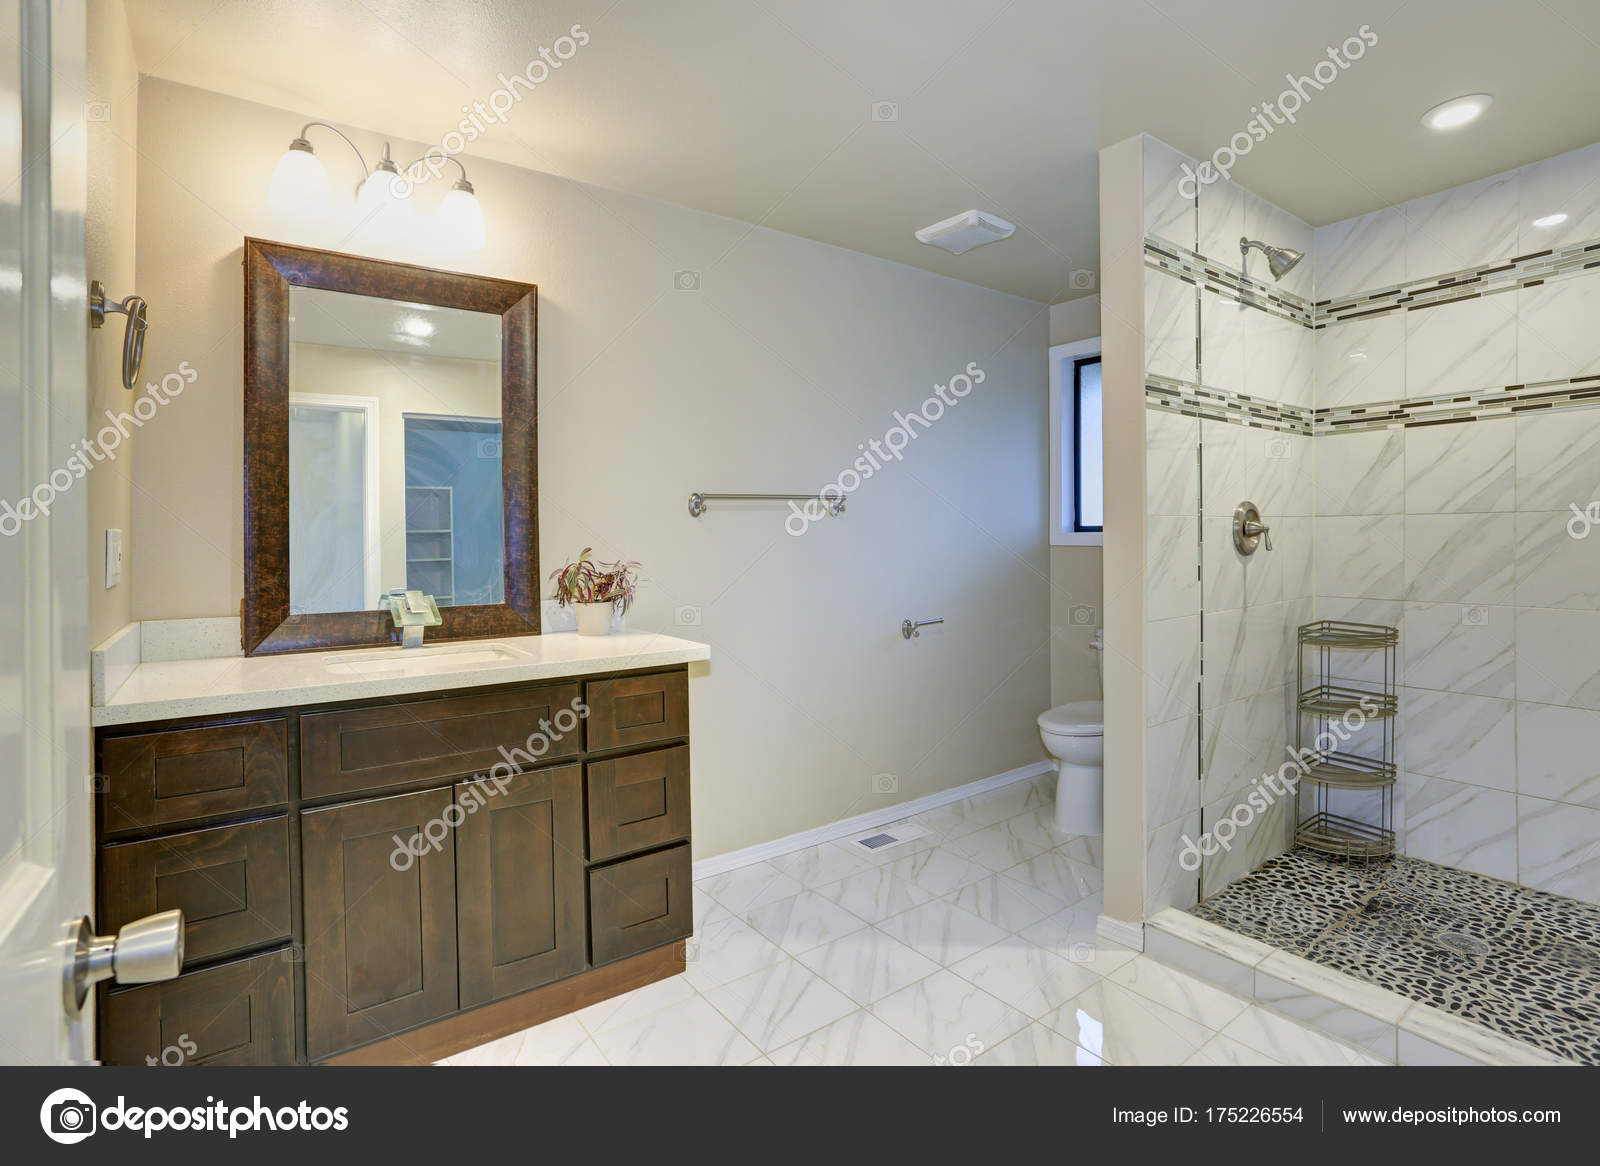 Bright Clean Bathroom Interior With Espresso Vanity Cabinet Stock Photo